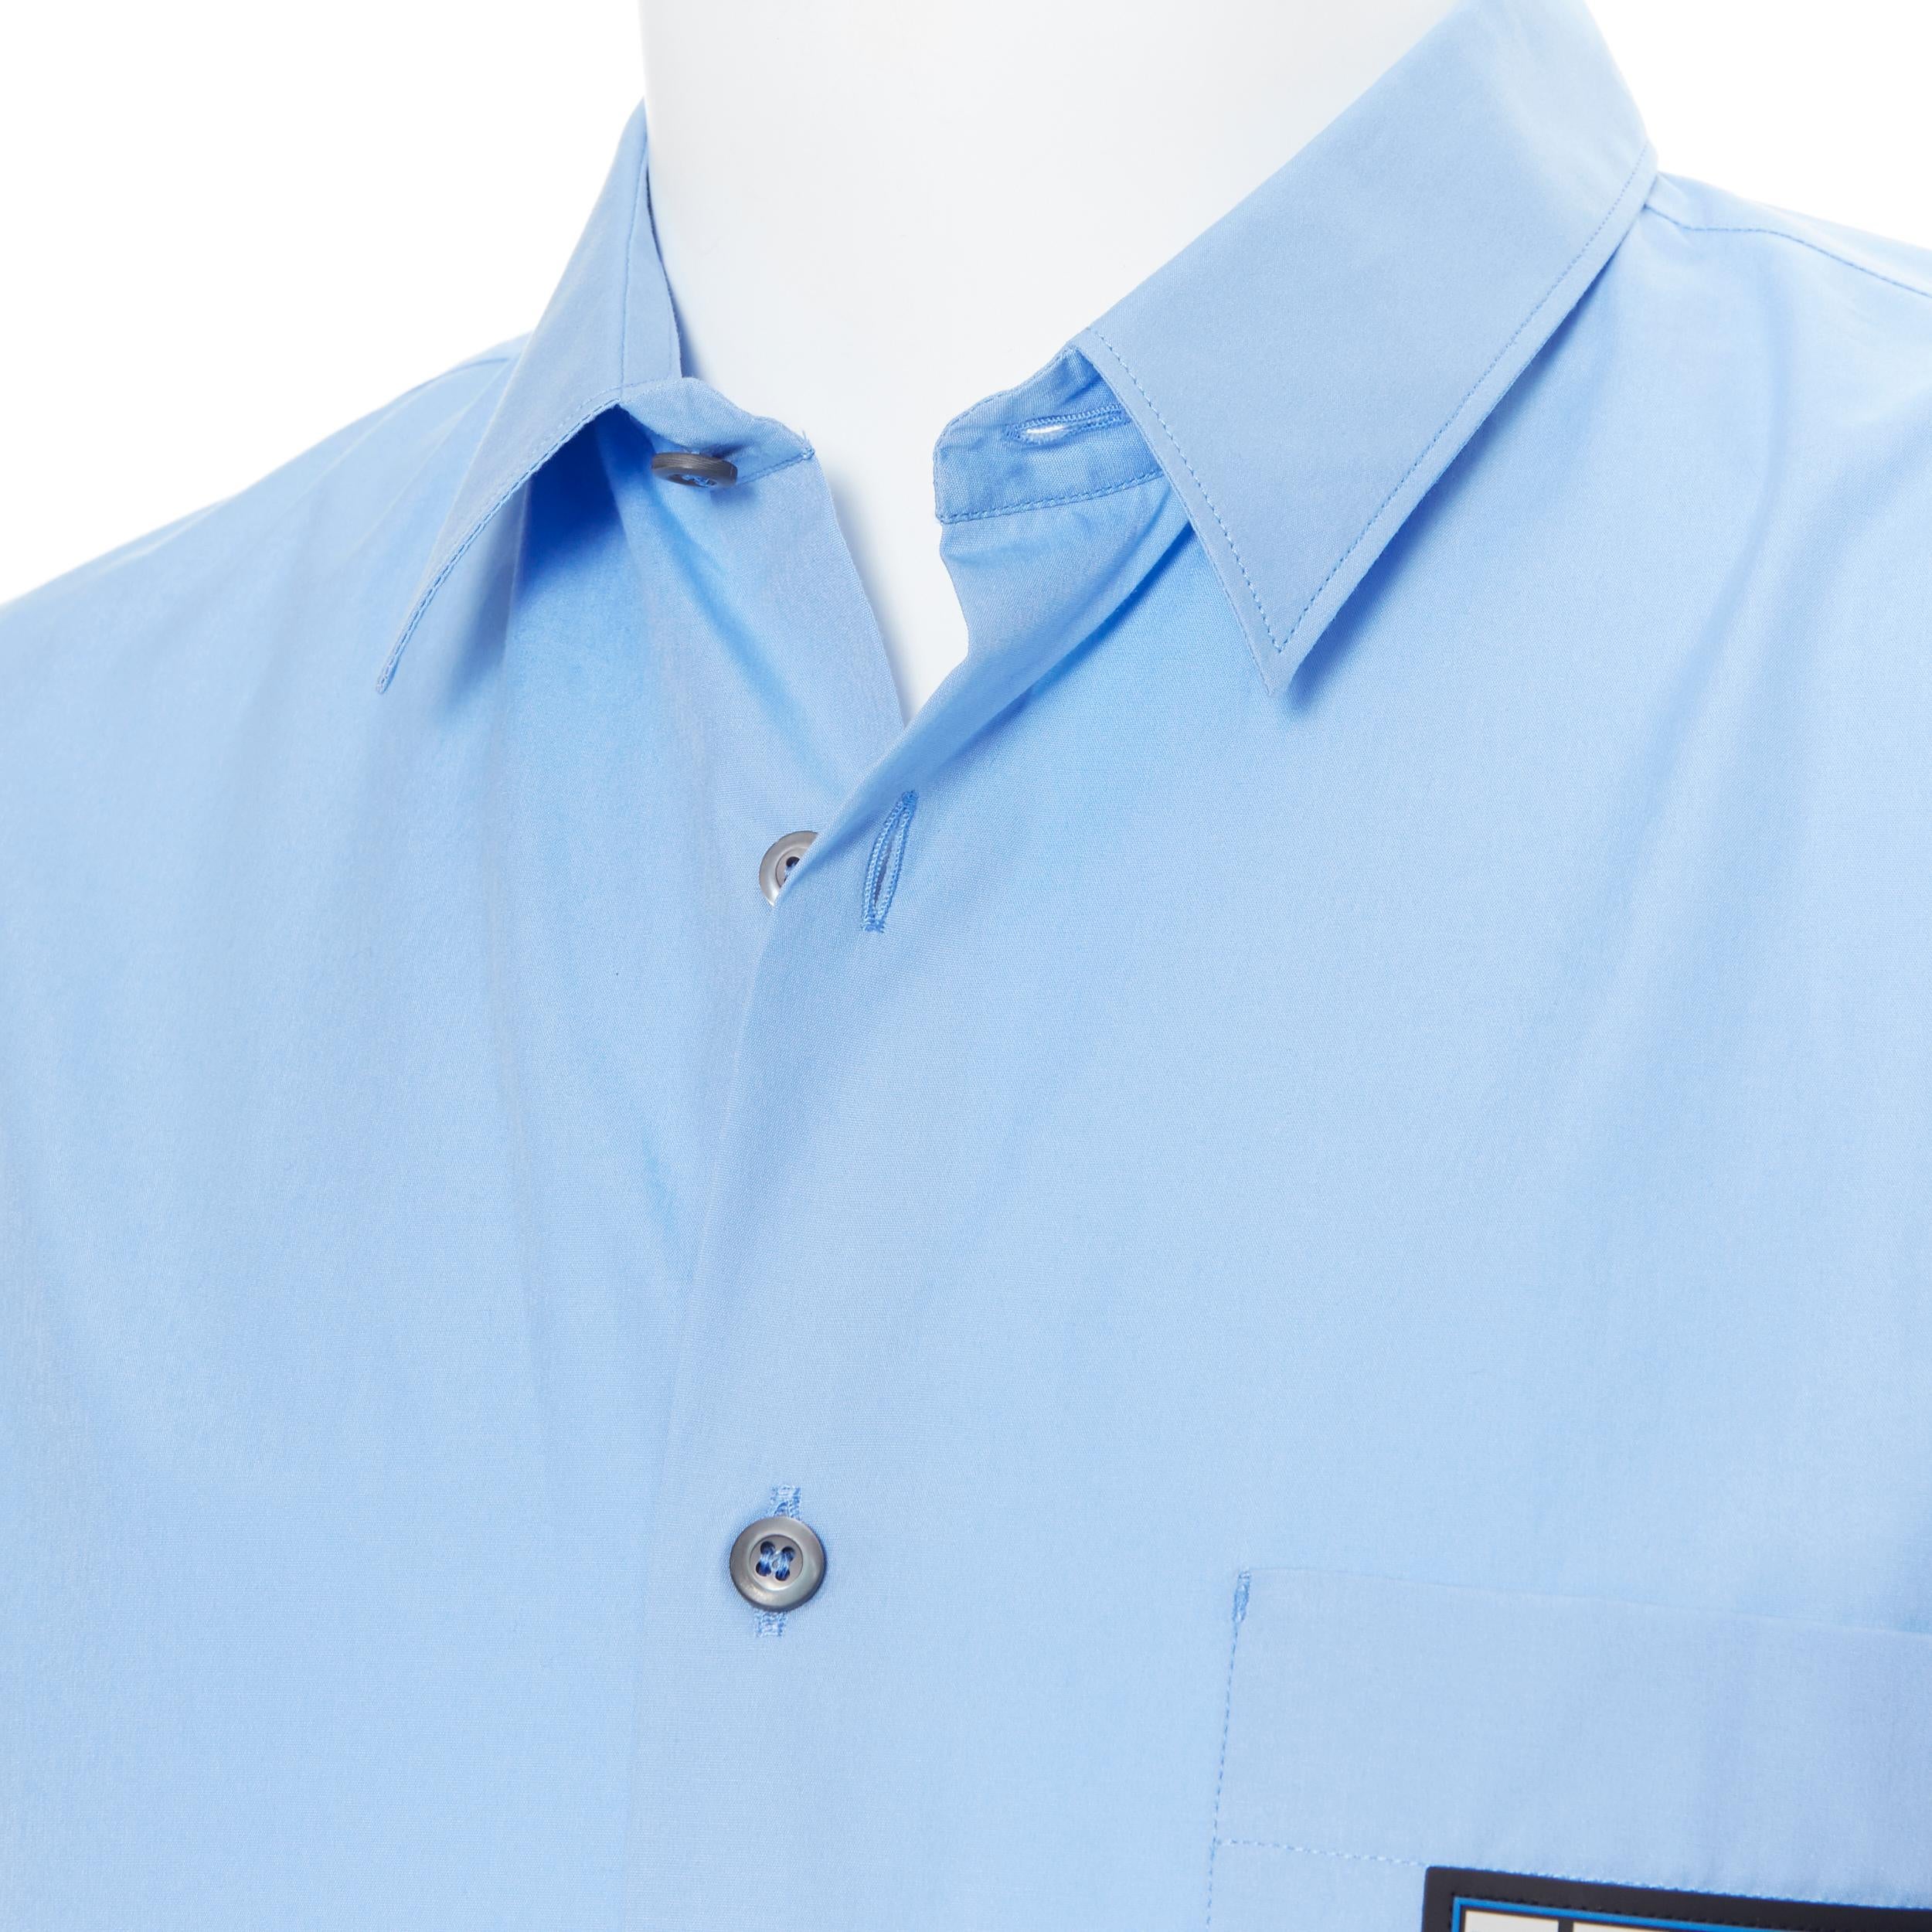 new PRADA 2019 light blue rubber logo patch breast pocket casual shirt EU41 L 1